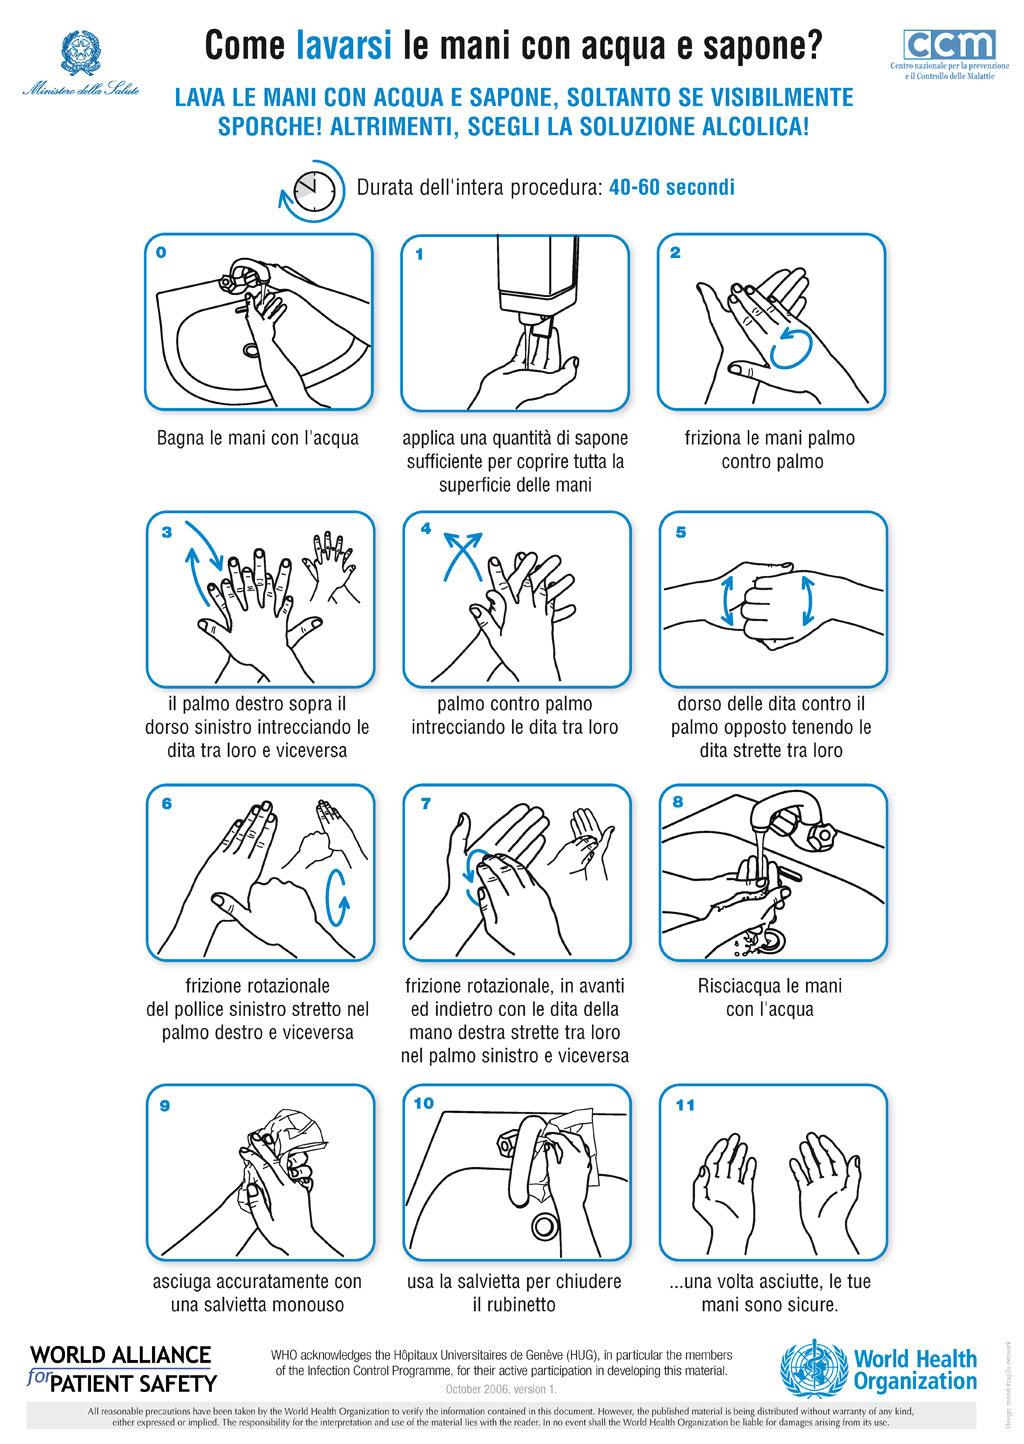 sciacquare bene; asciugare le mani con un asciugamano pulito o con un aria calda; se possibile utilizzare